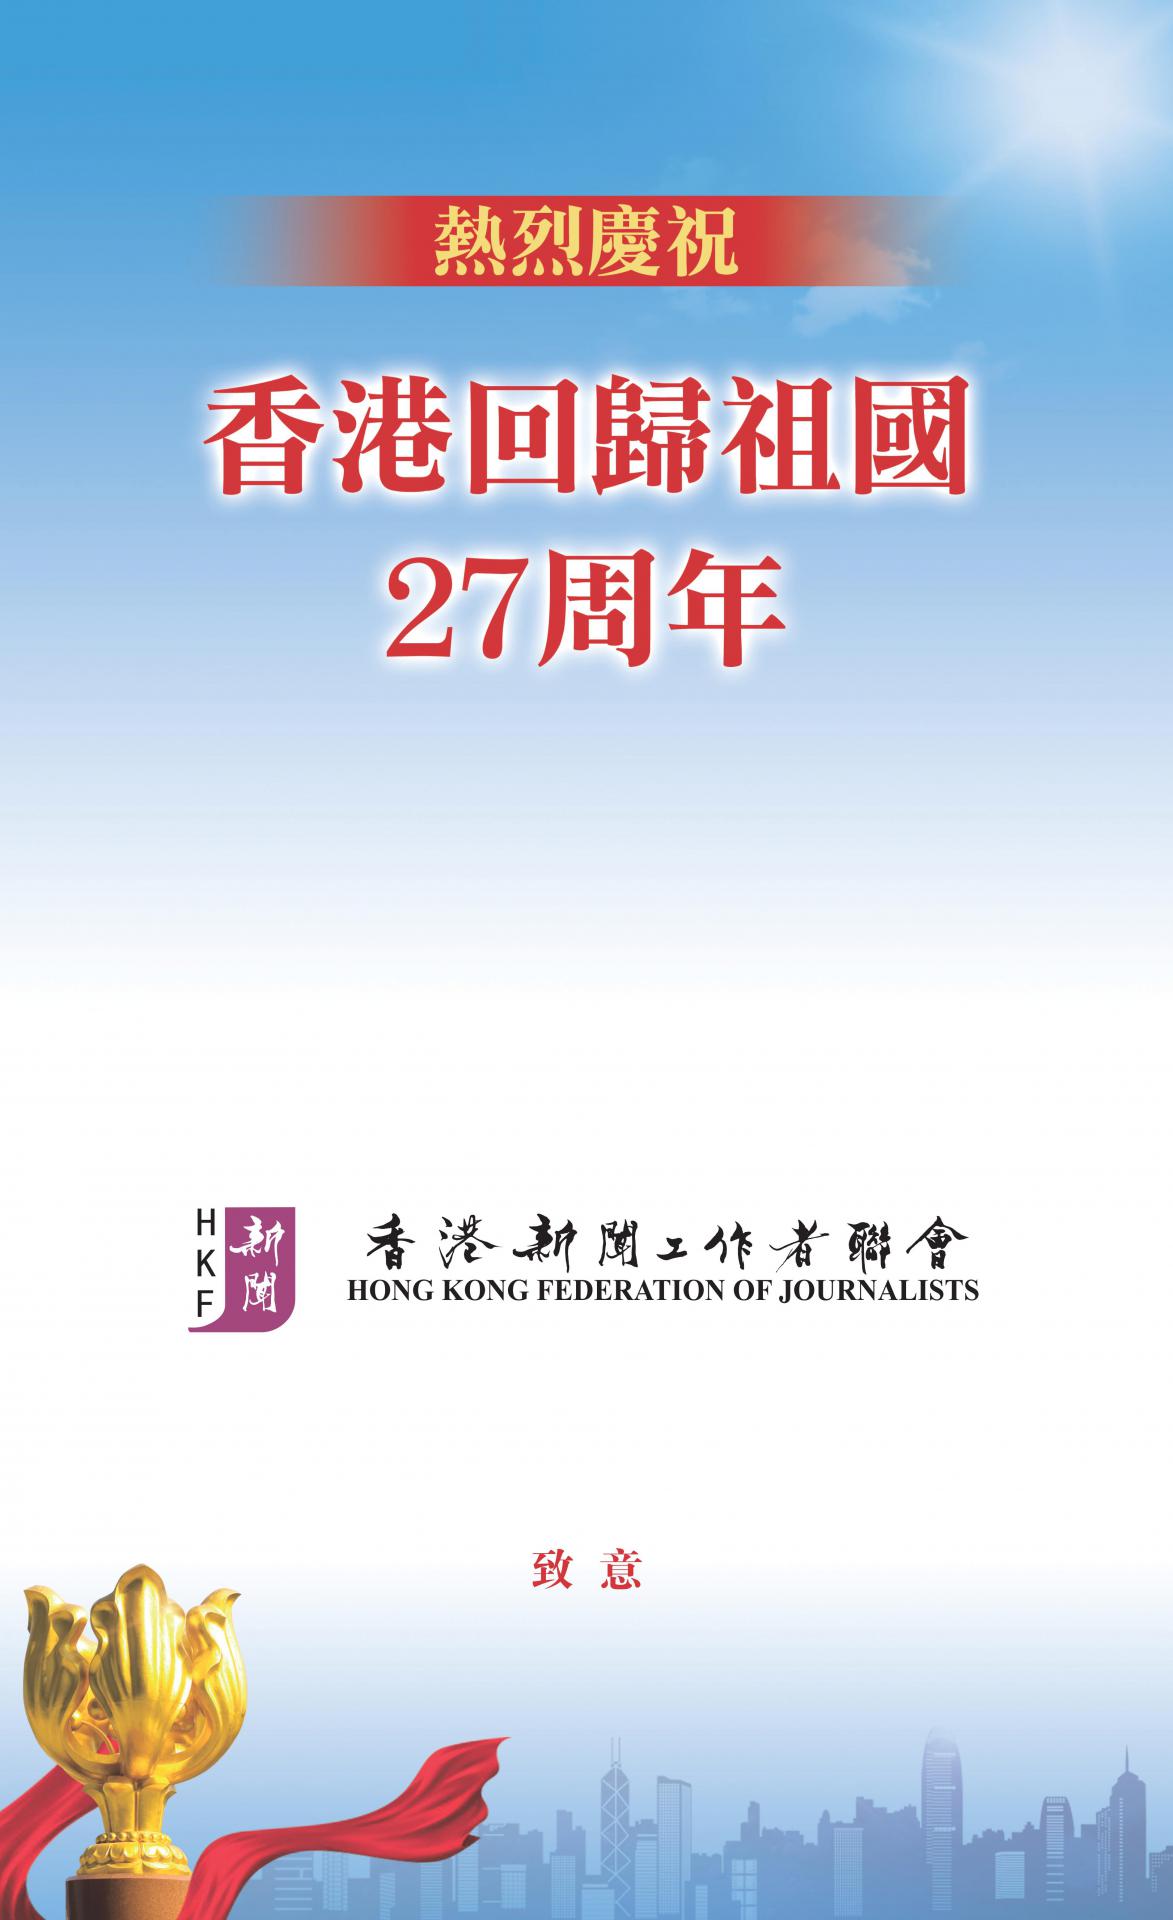 熱烈慶祝香港回歸祖國27周年